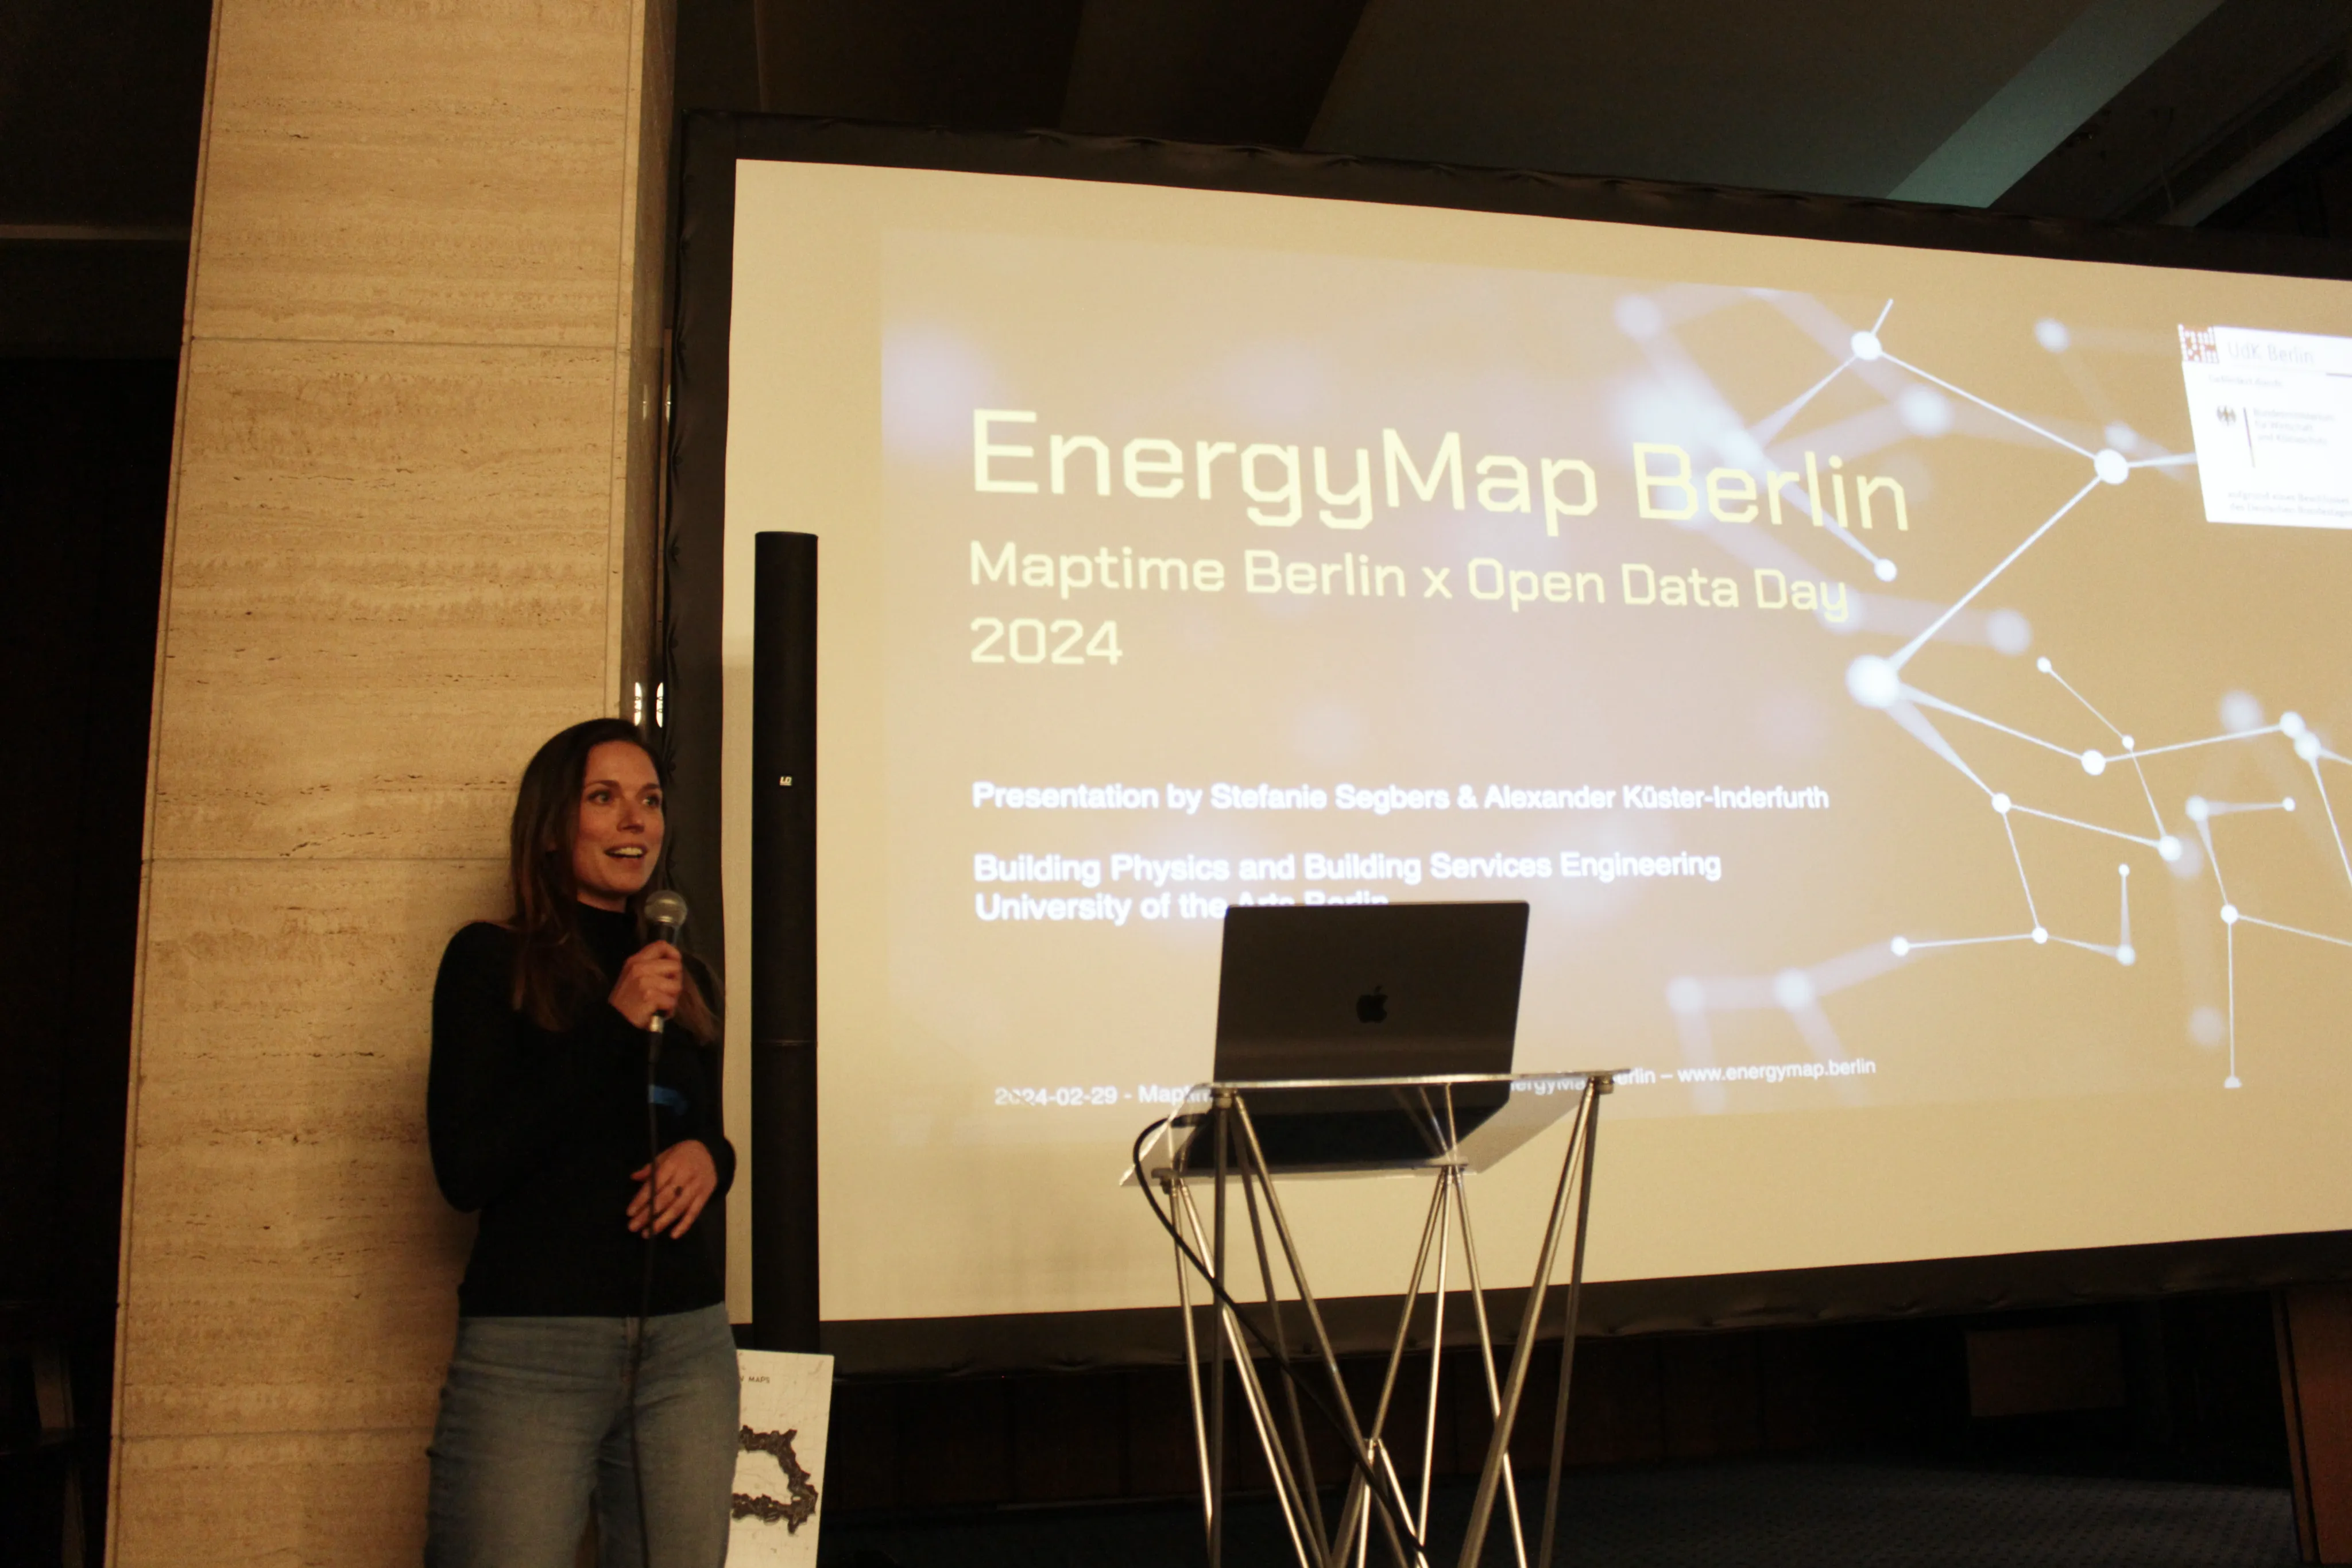 Stefanie Segbers stellt Energy Map Berlin vor.